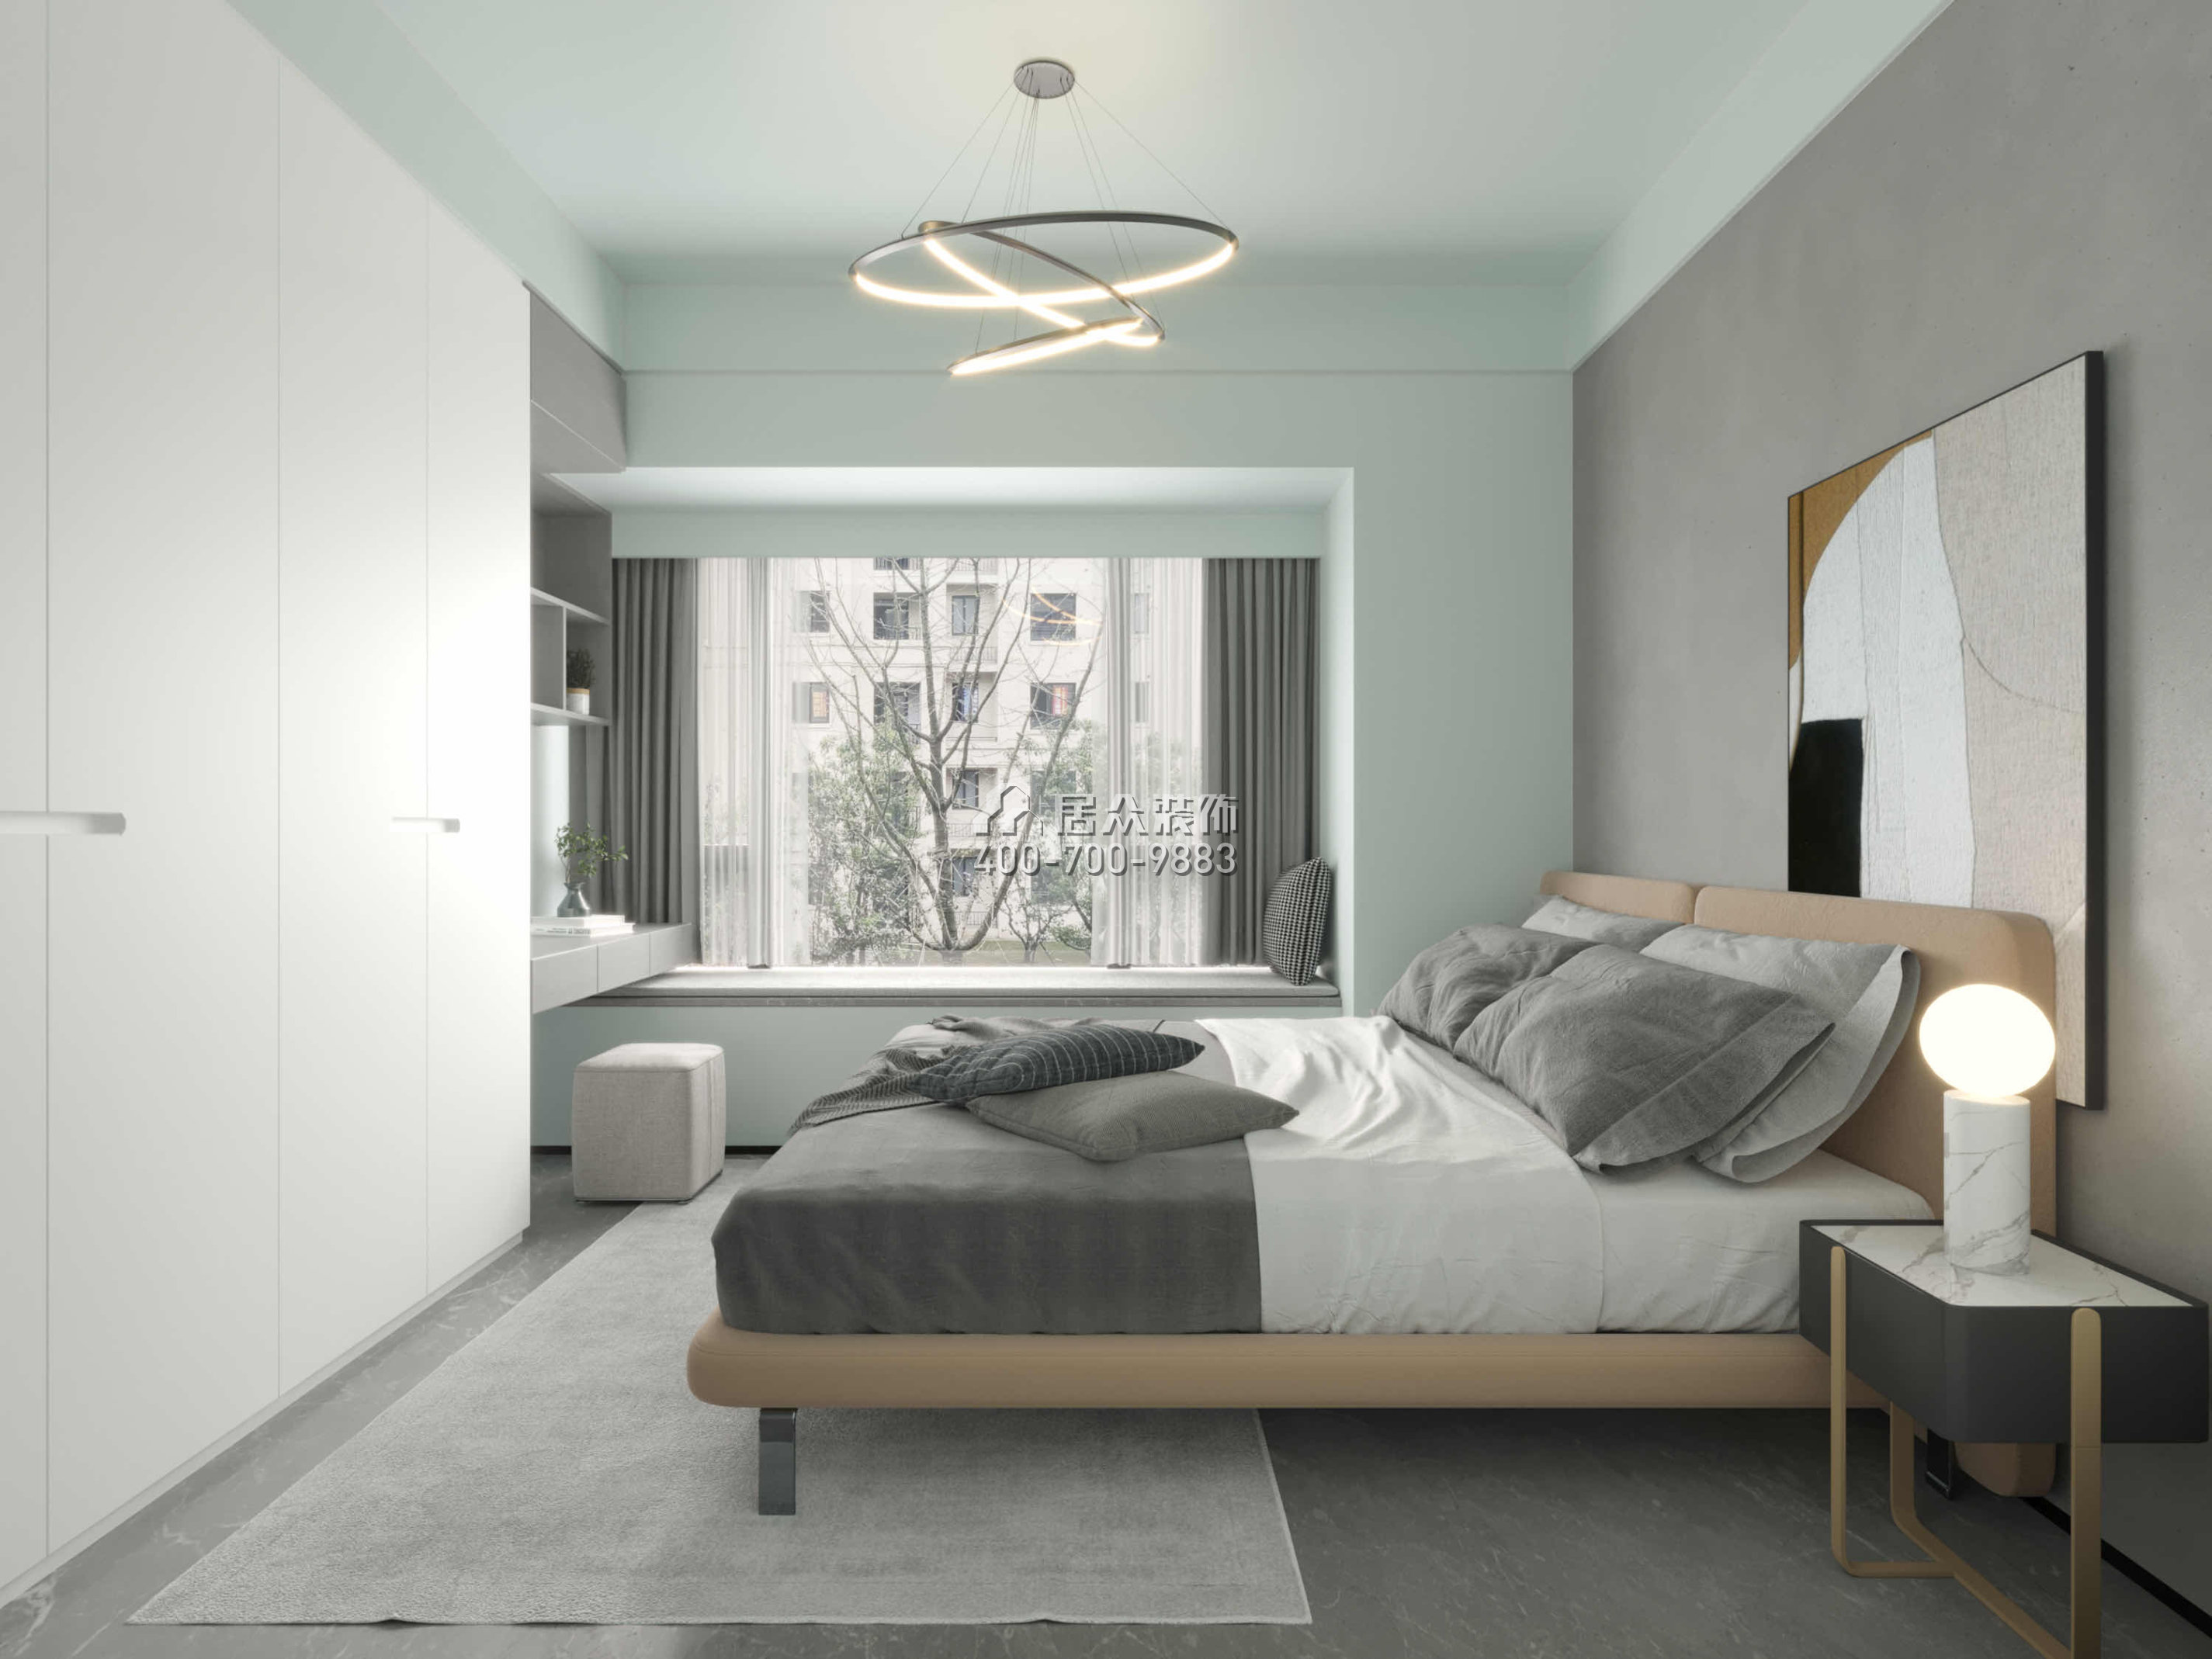 京基·御景峯110平方米現代簡約風格平層戶型臥室裝修效果圖